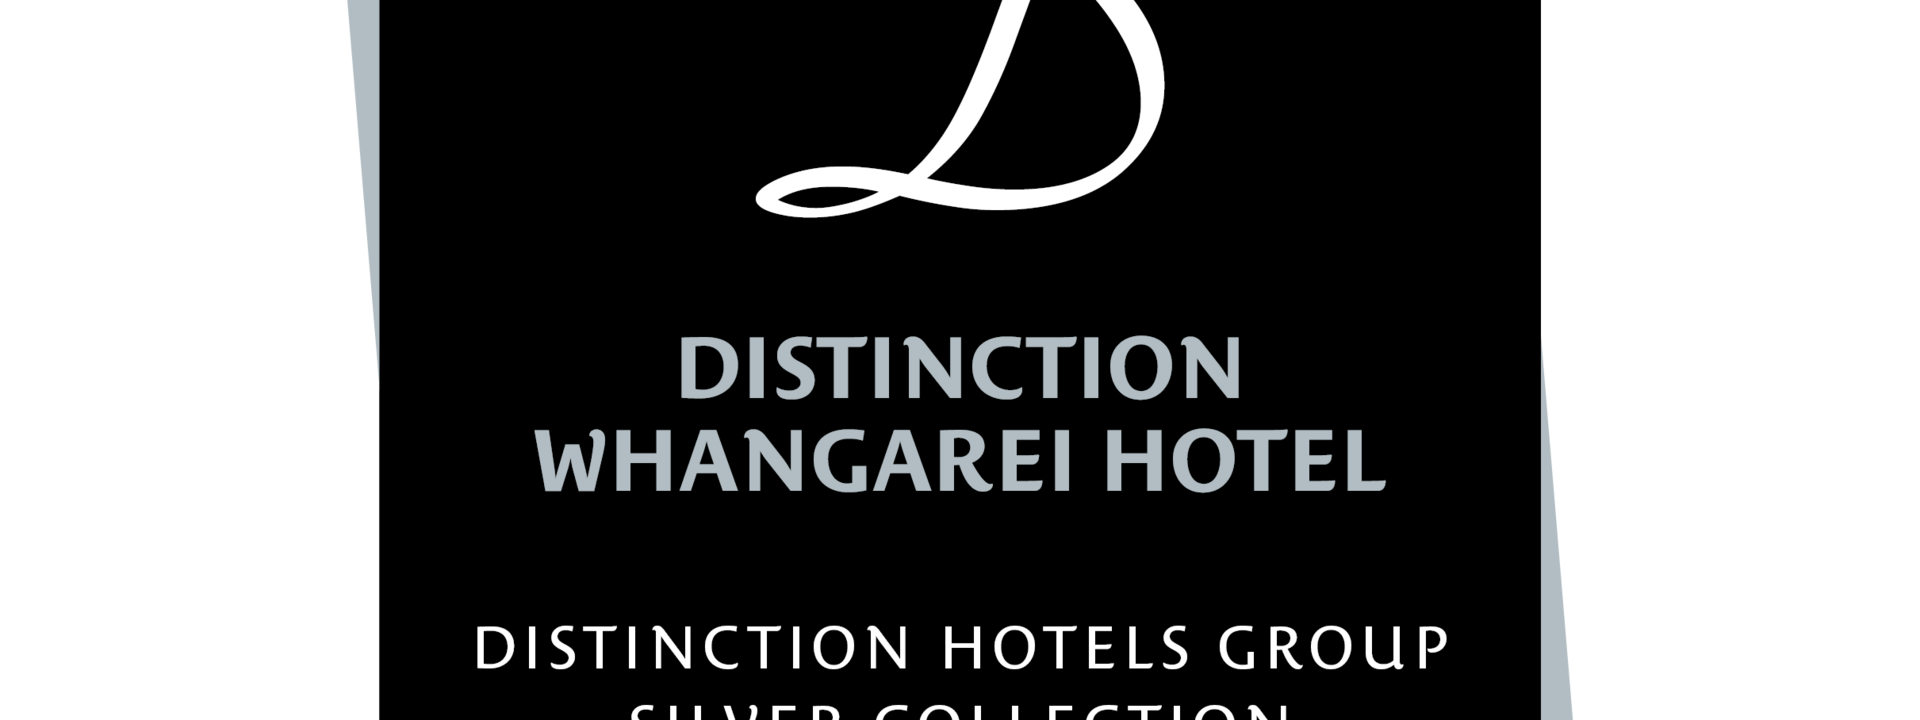 Distinction Whangarei Hotel  Logo4 PNG.png